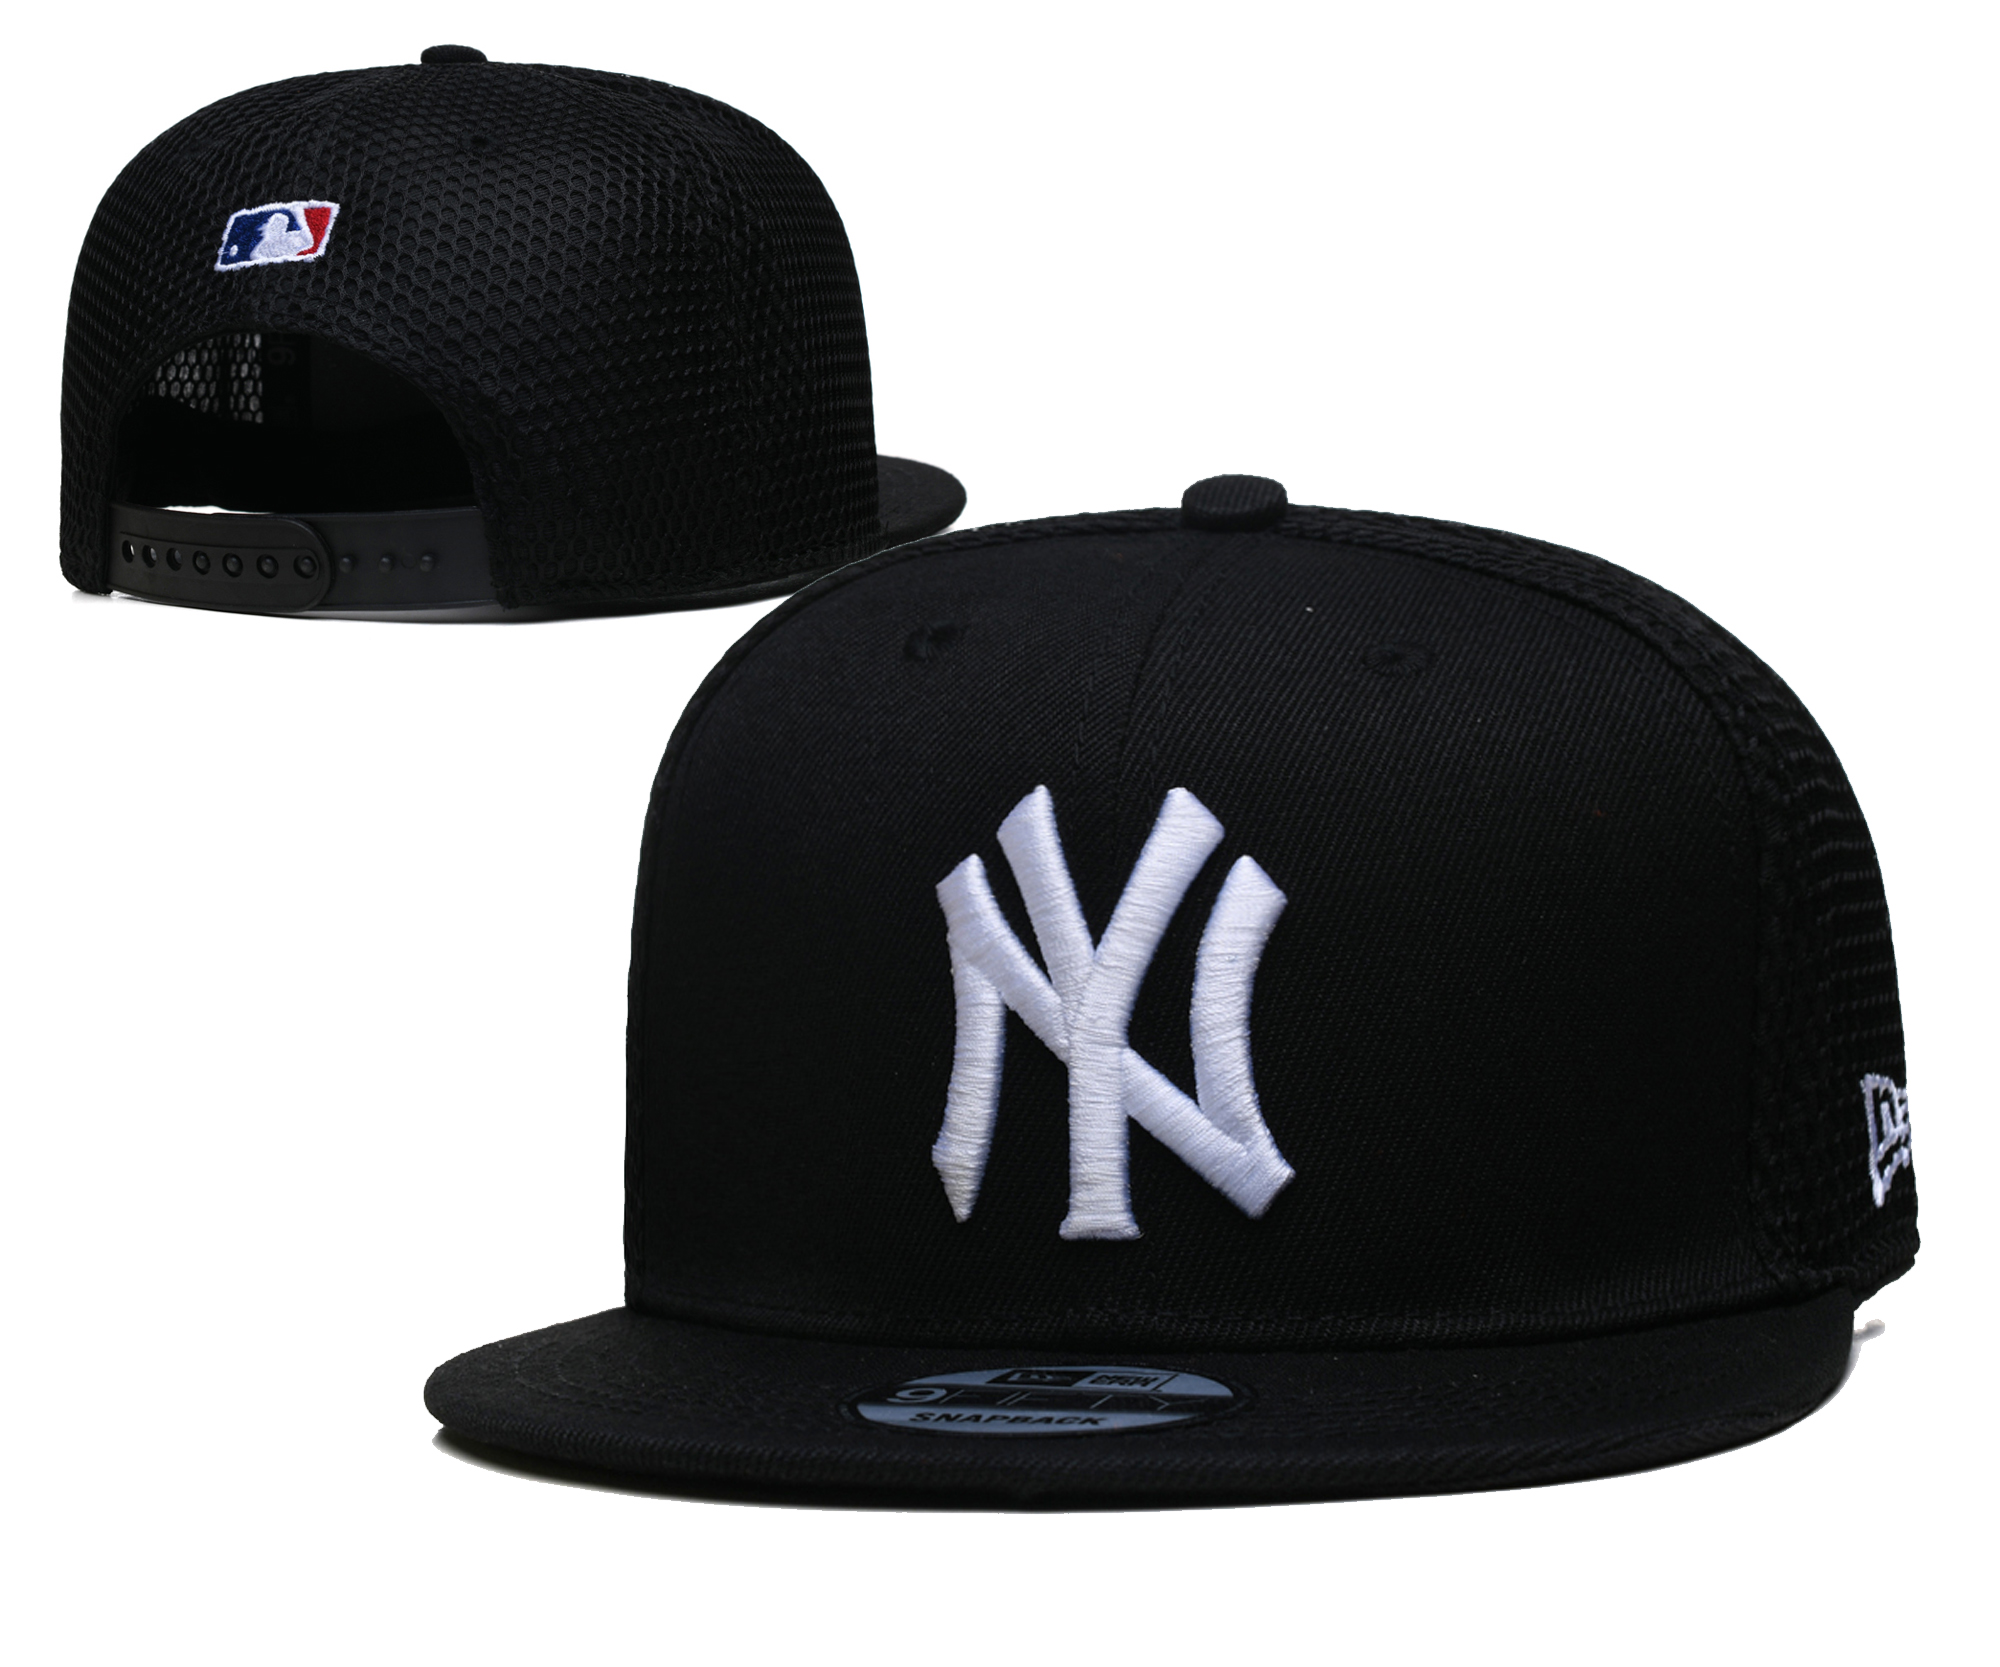 Cheap 2021 MLB New York Yankees 27 TX hat